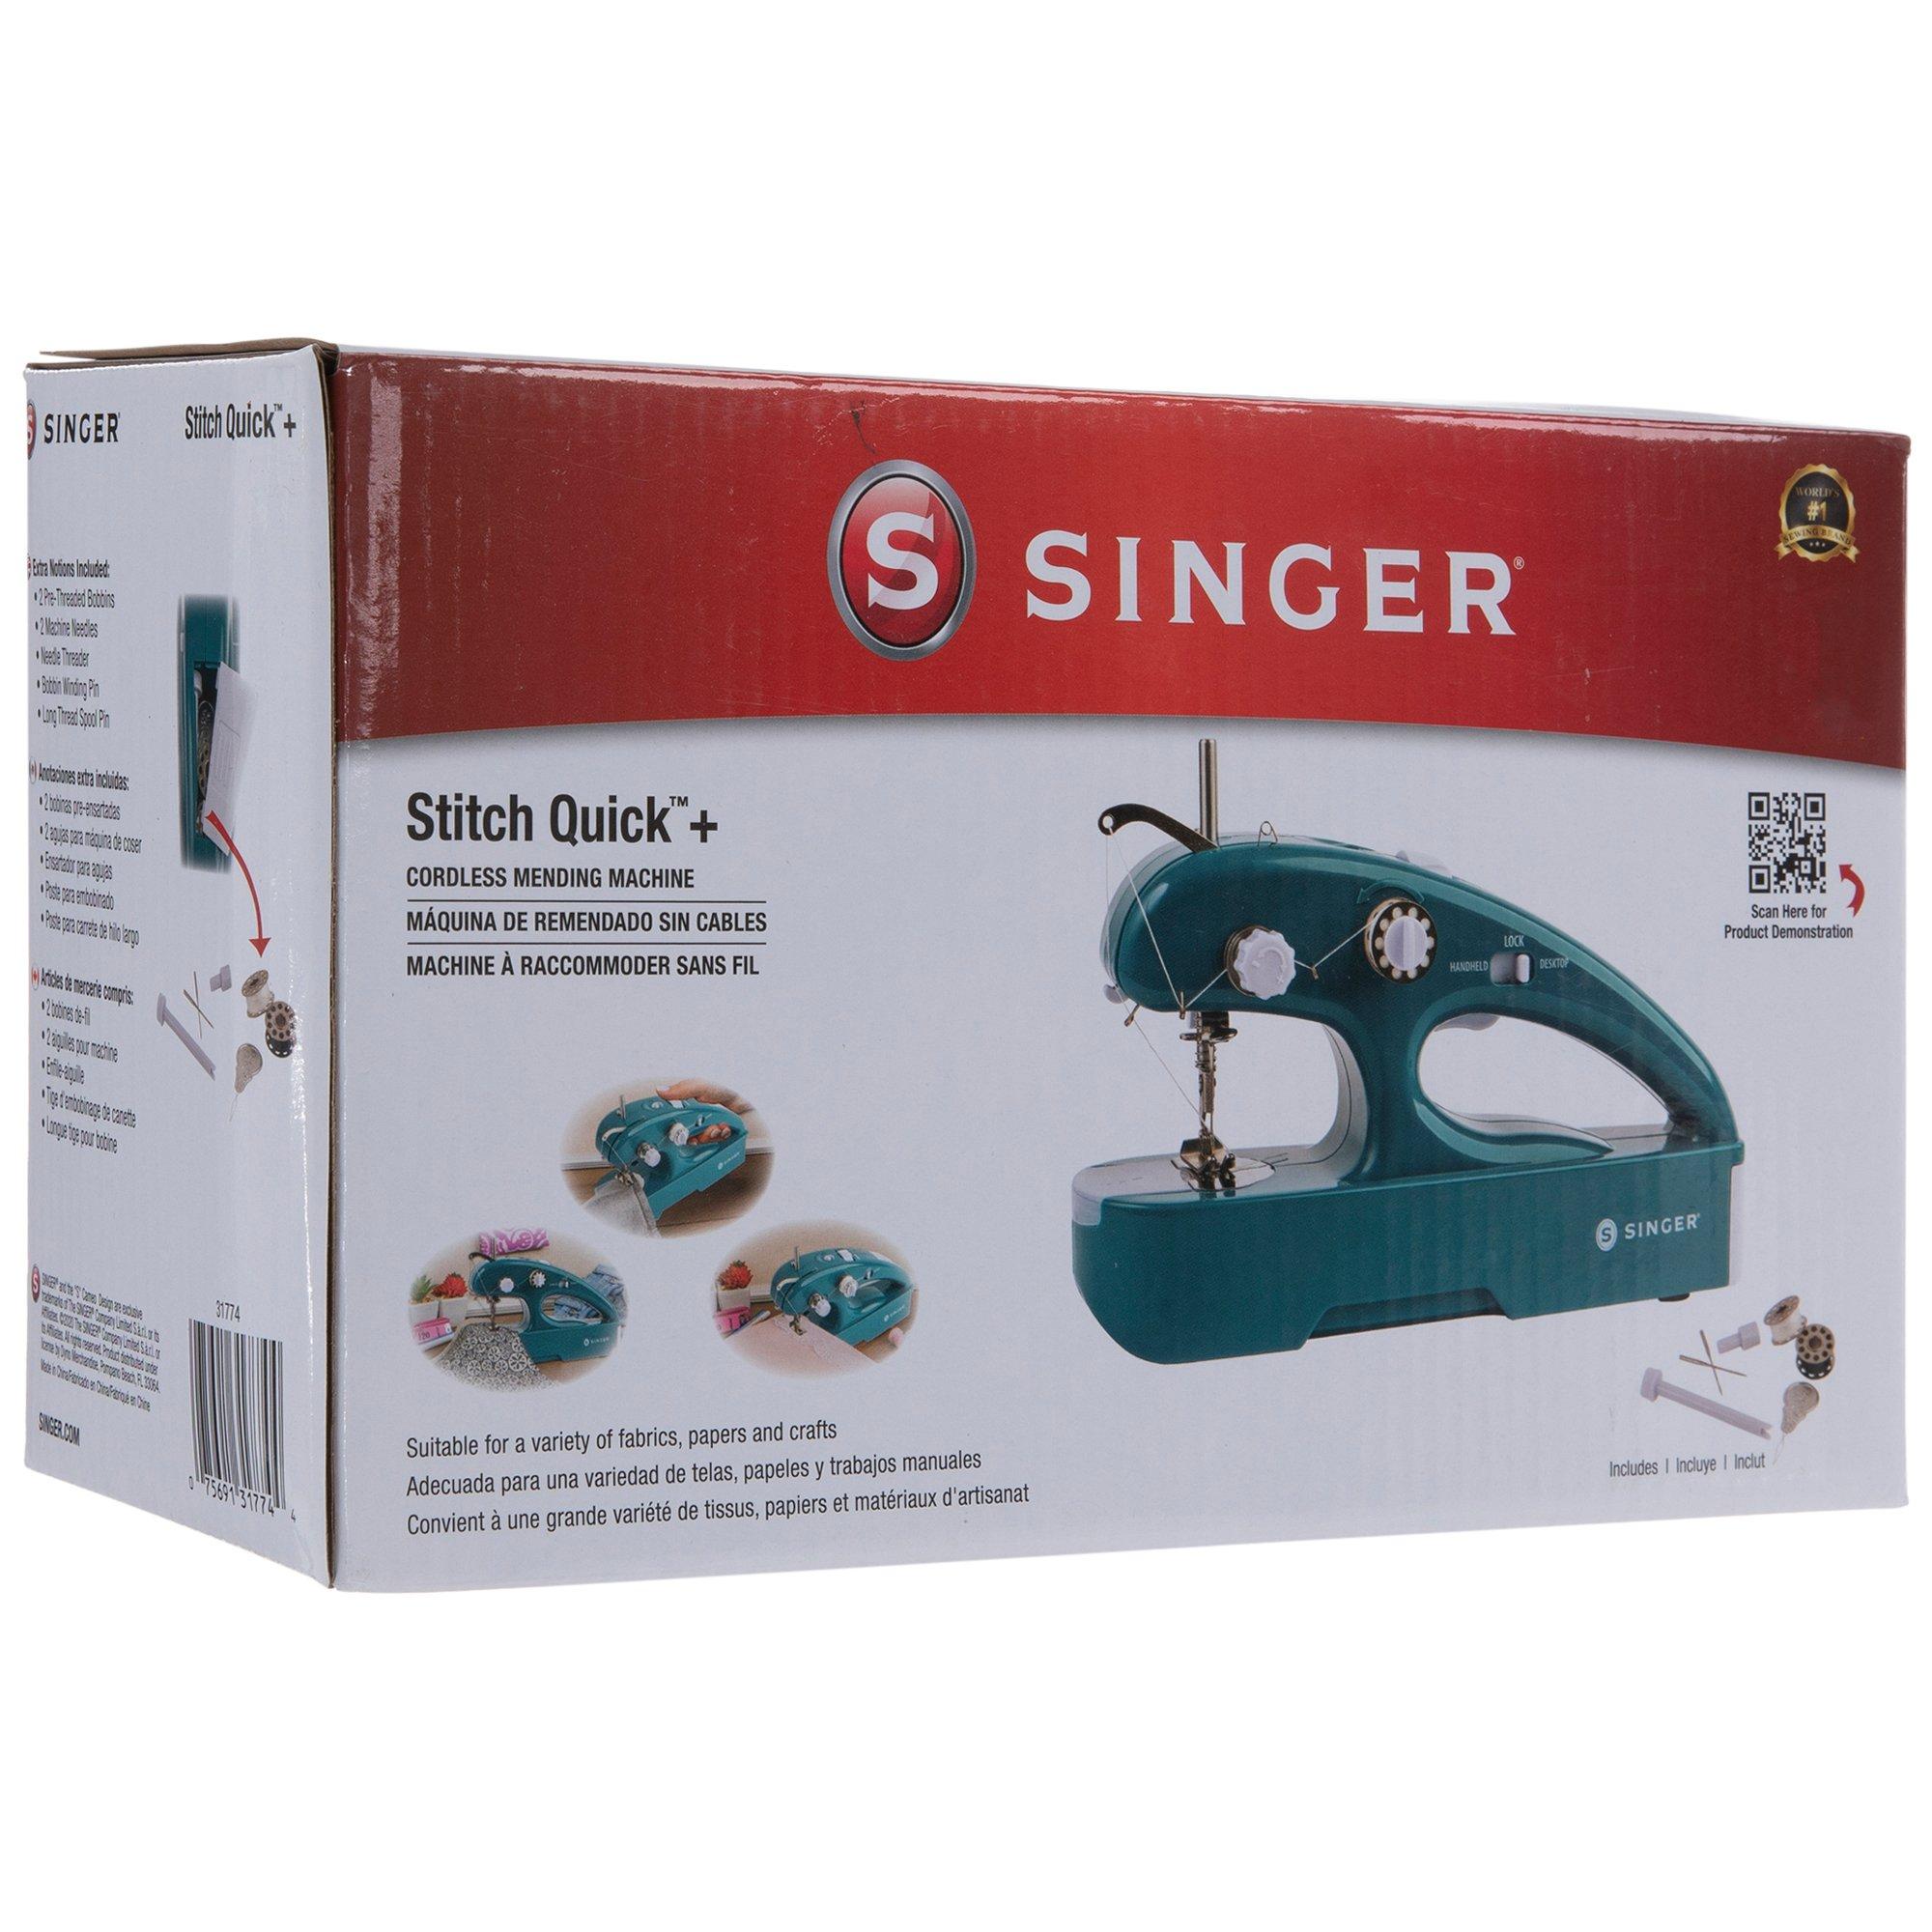 Singer Stitch Sew Quick Hand-Held Sewing Machine